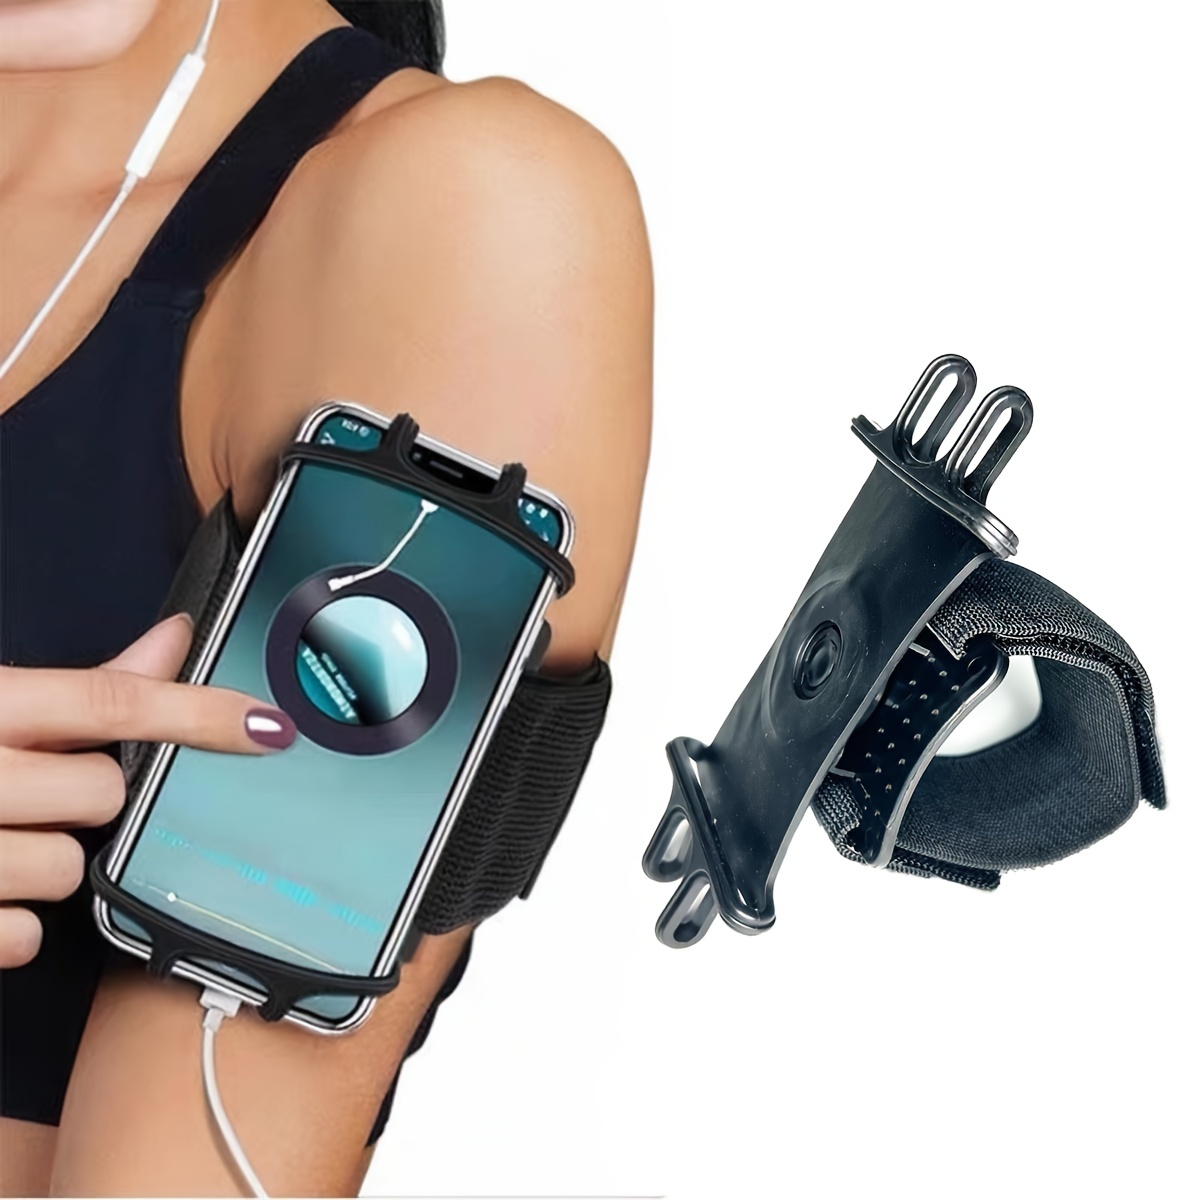 Brazalete deportivo universal para todos los teléfonos. Brazalete de  teléfono celular para correr, entrenamiento físico y gimnasio (iPhone 7/8